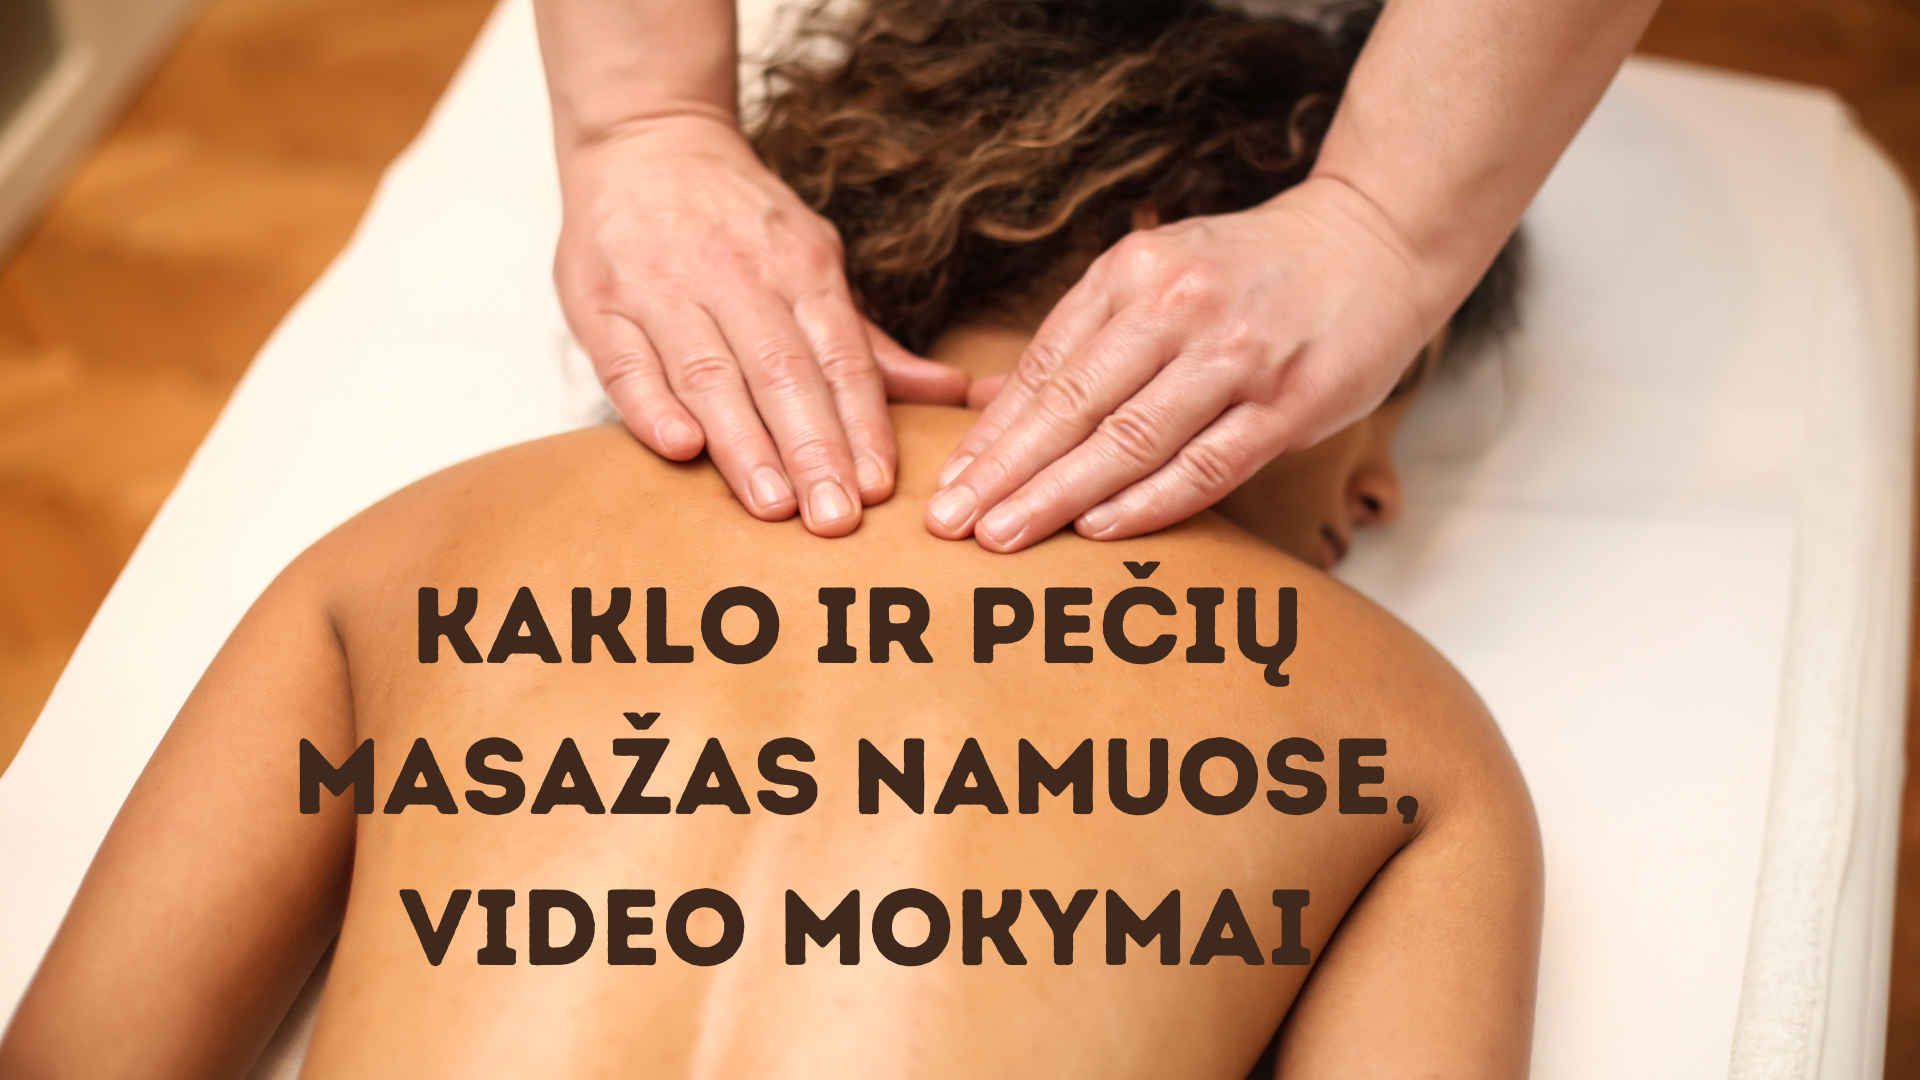 Pečių masažas namuose, video mokymai